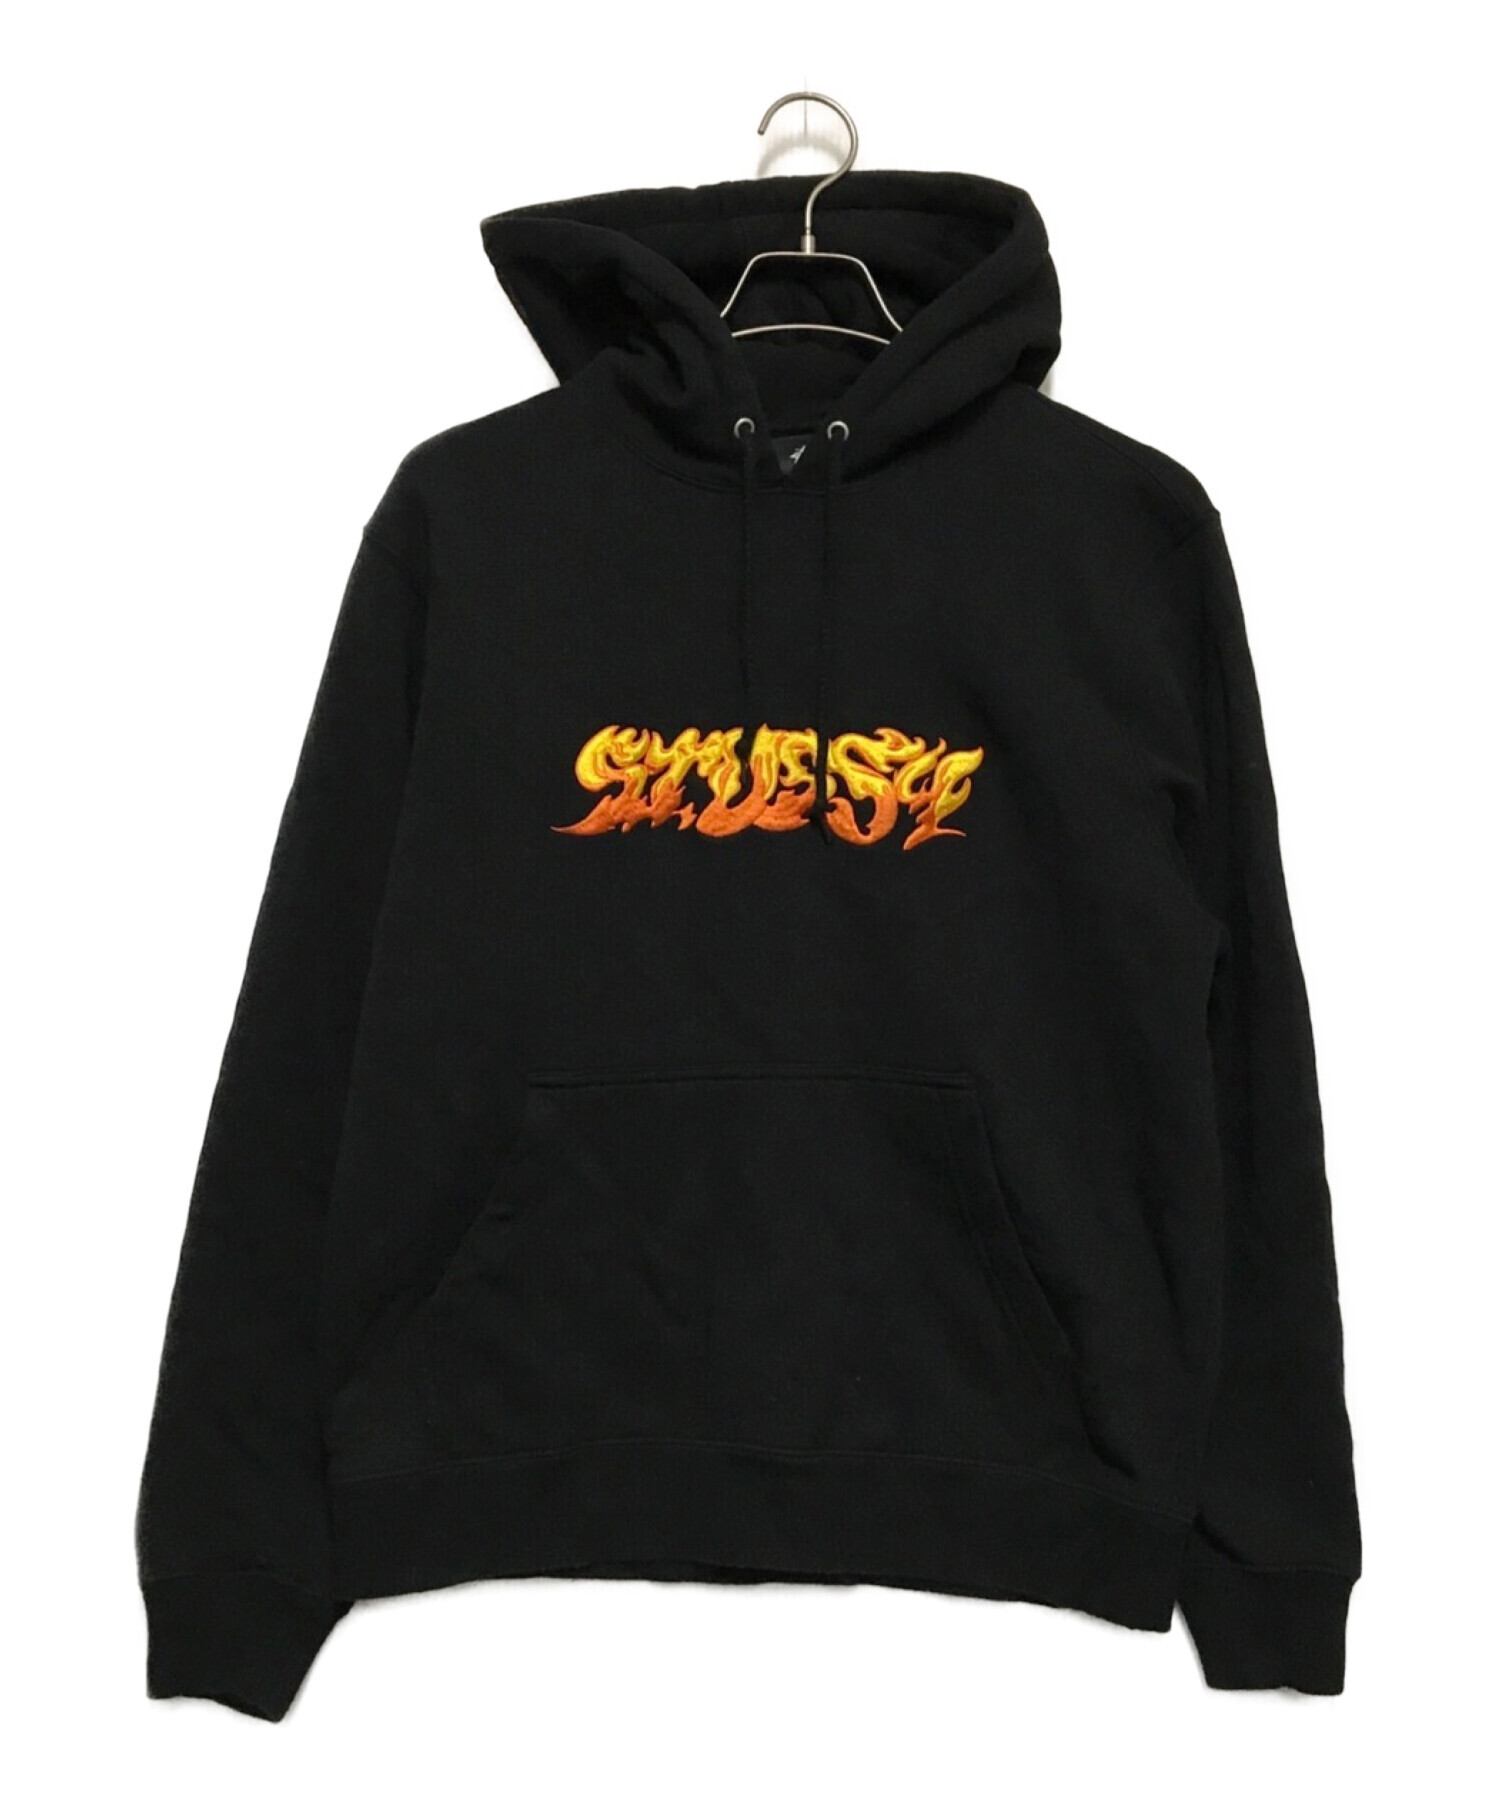 stussy (ステューシー) ファイヤーロゴパーカー ブラック サイズ:S